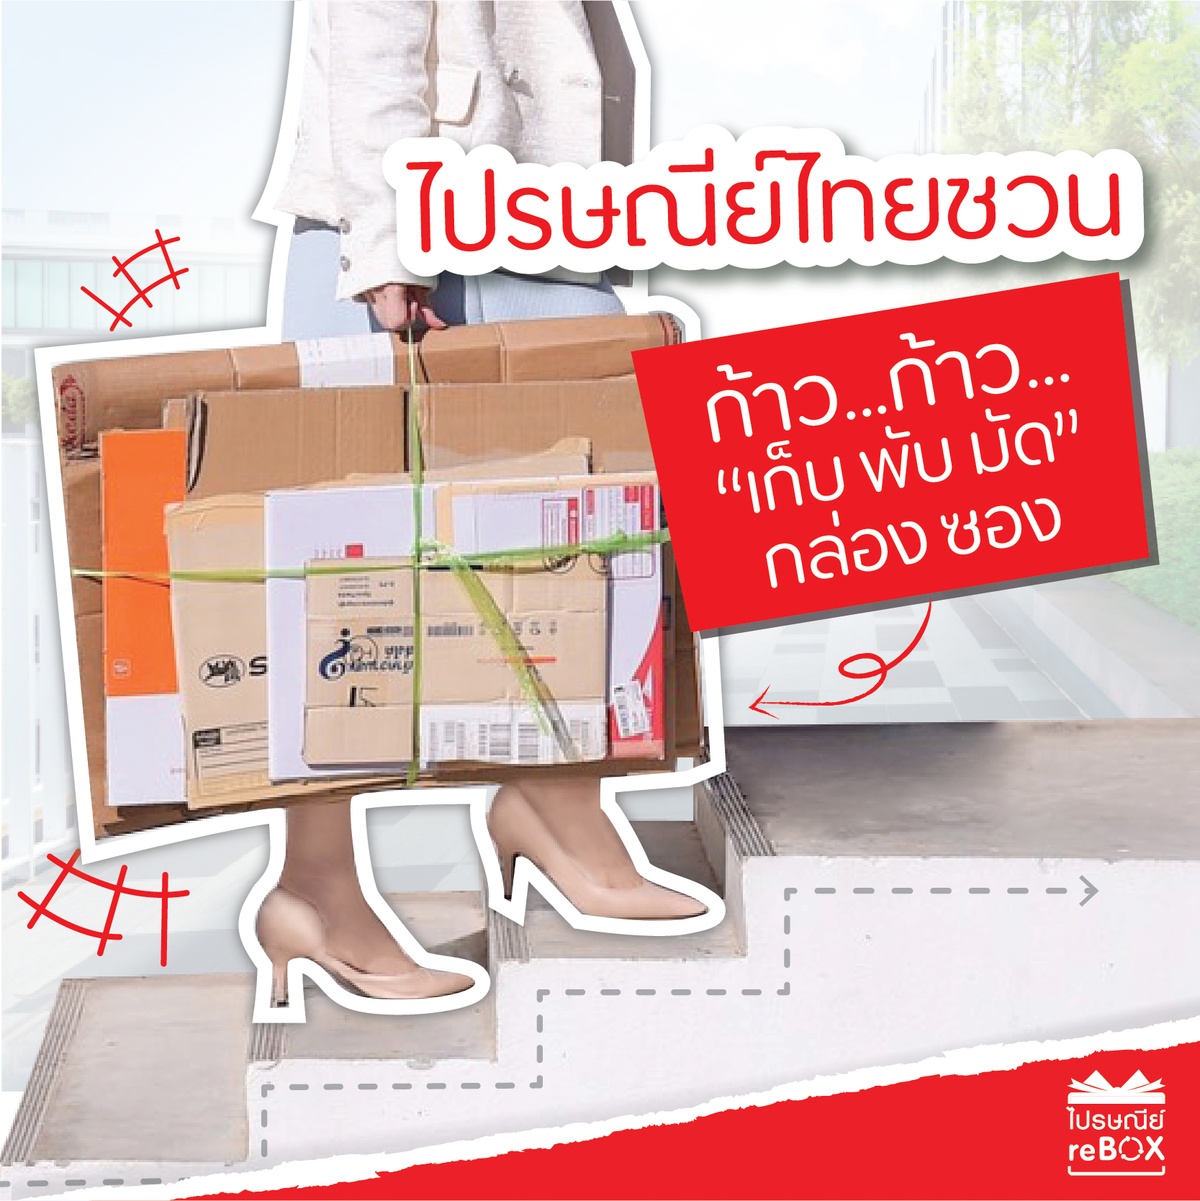 ไปรษณีย์ไทยชวนนักช็อปออนไลน์ ร่วมคืนกล่องเก่าในเทศกาล 9.9